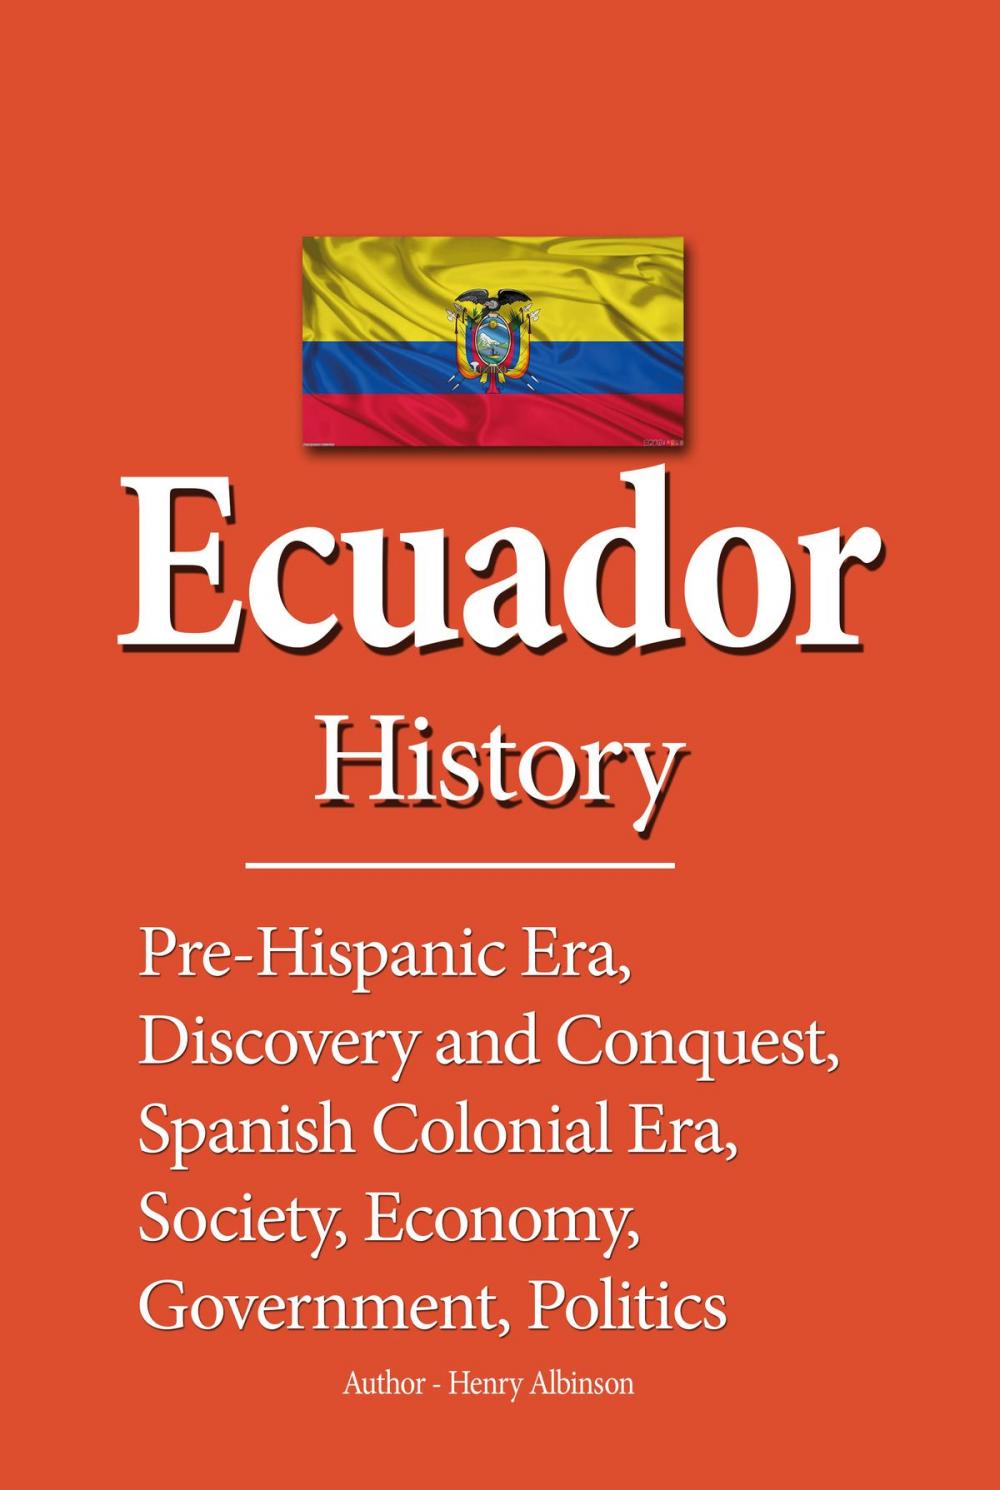 Big bigCover of Ecuador History